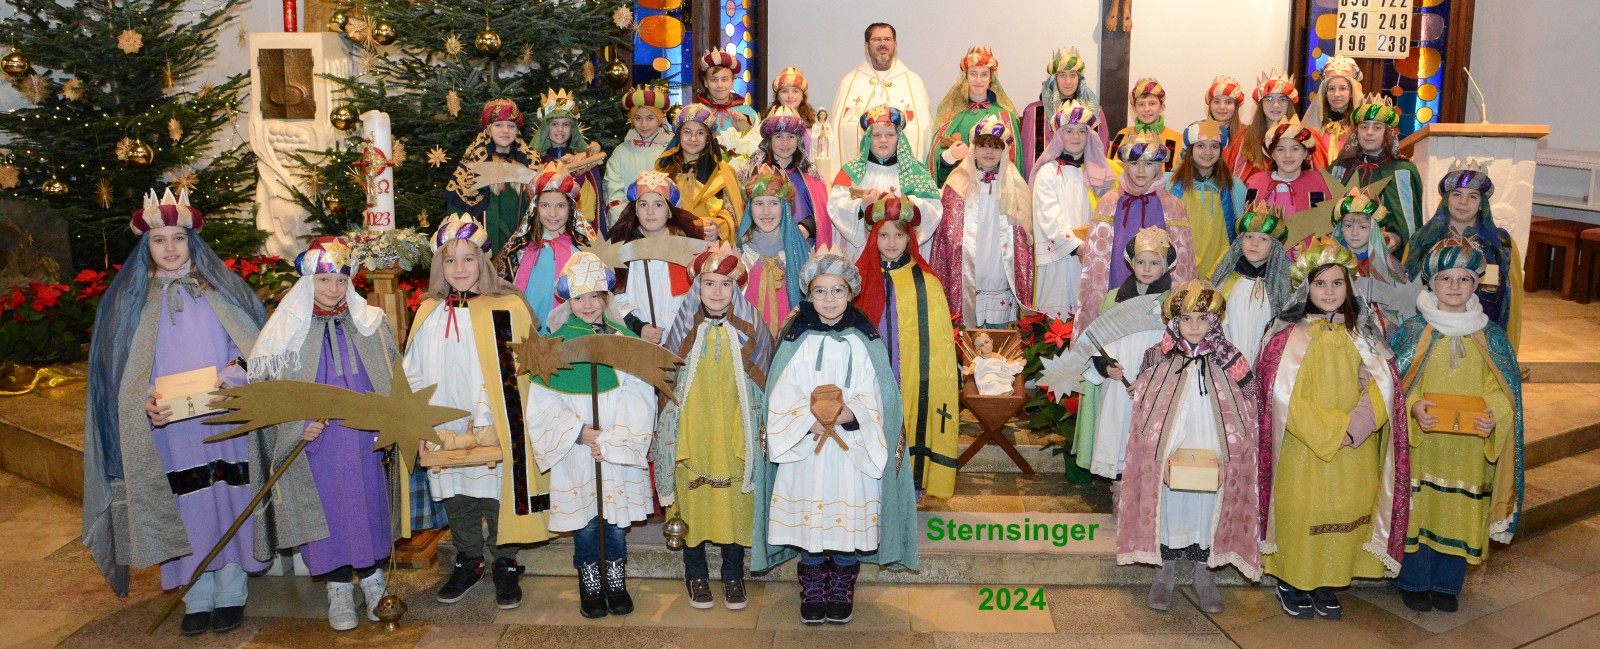 Sternsinger-2024